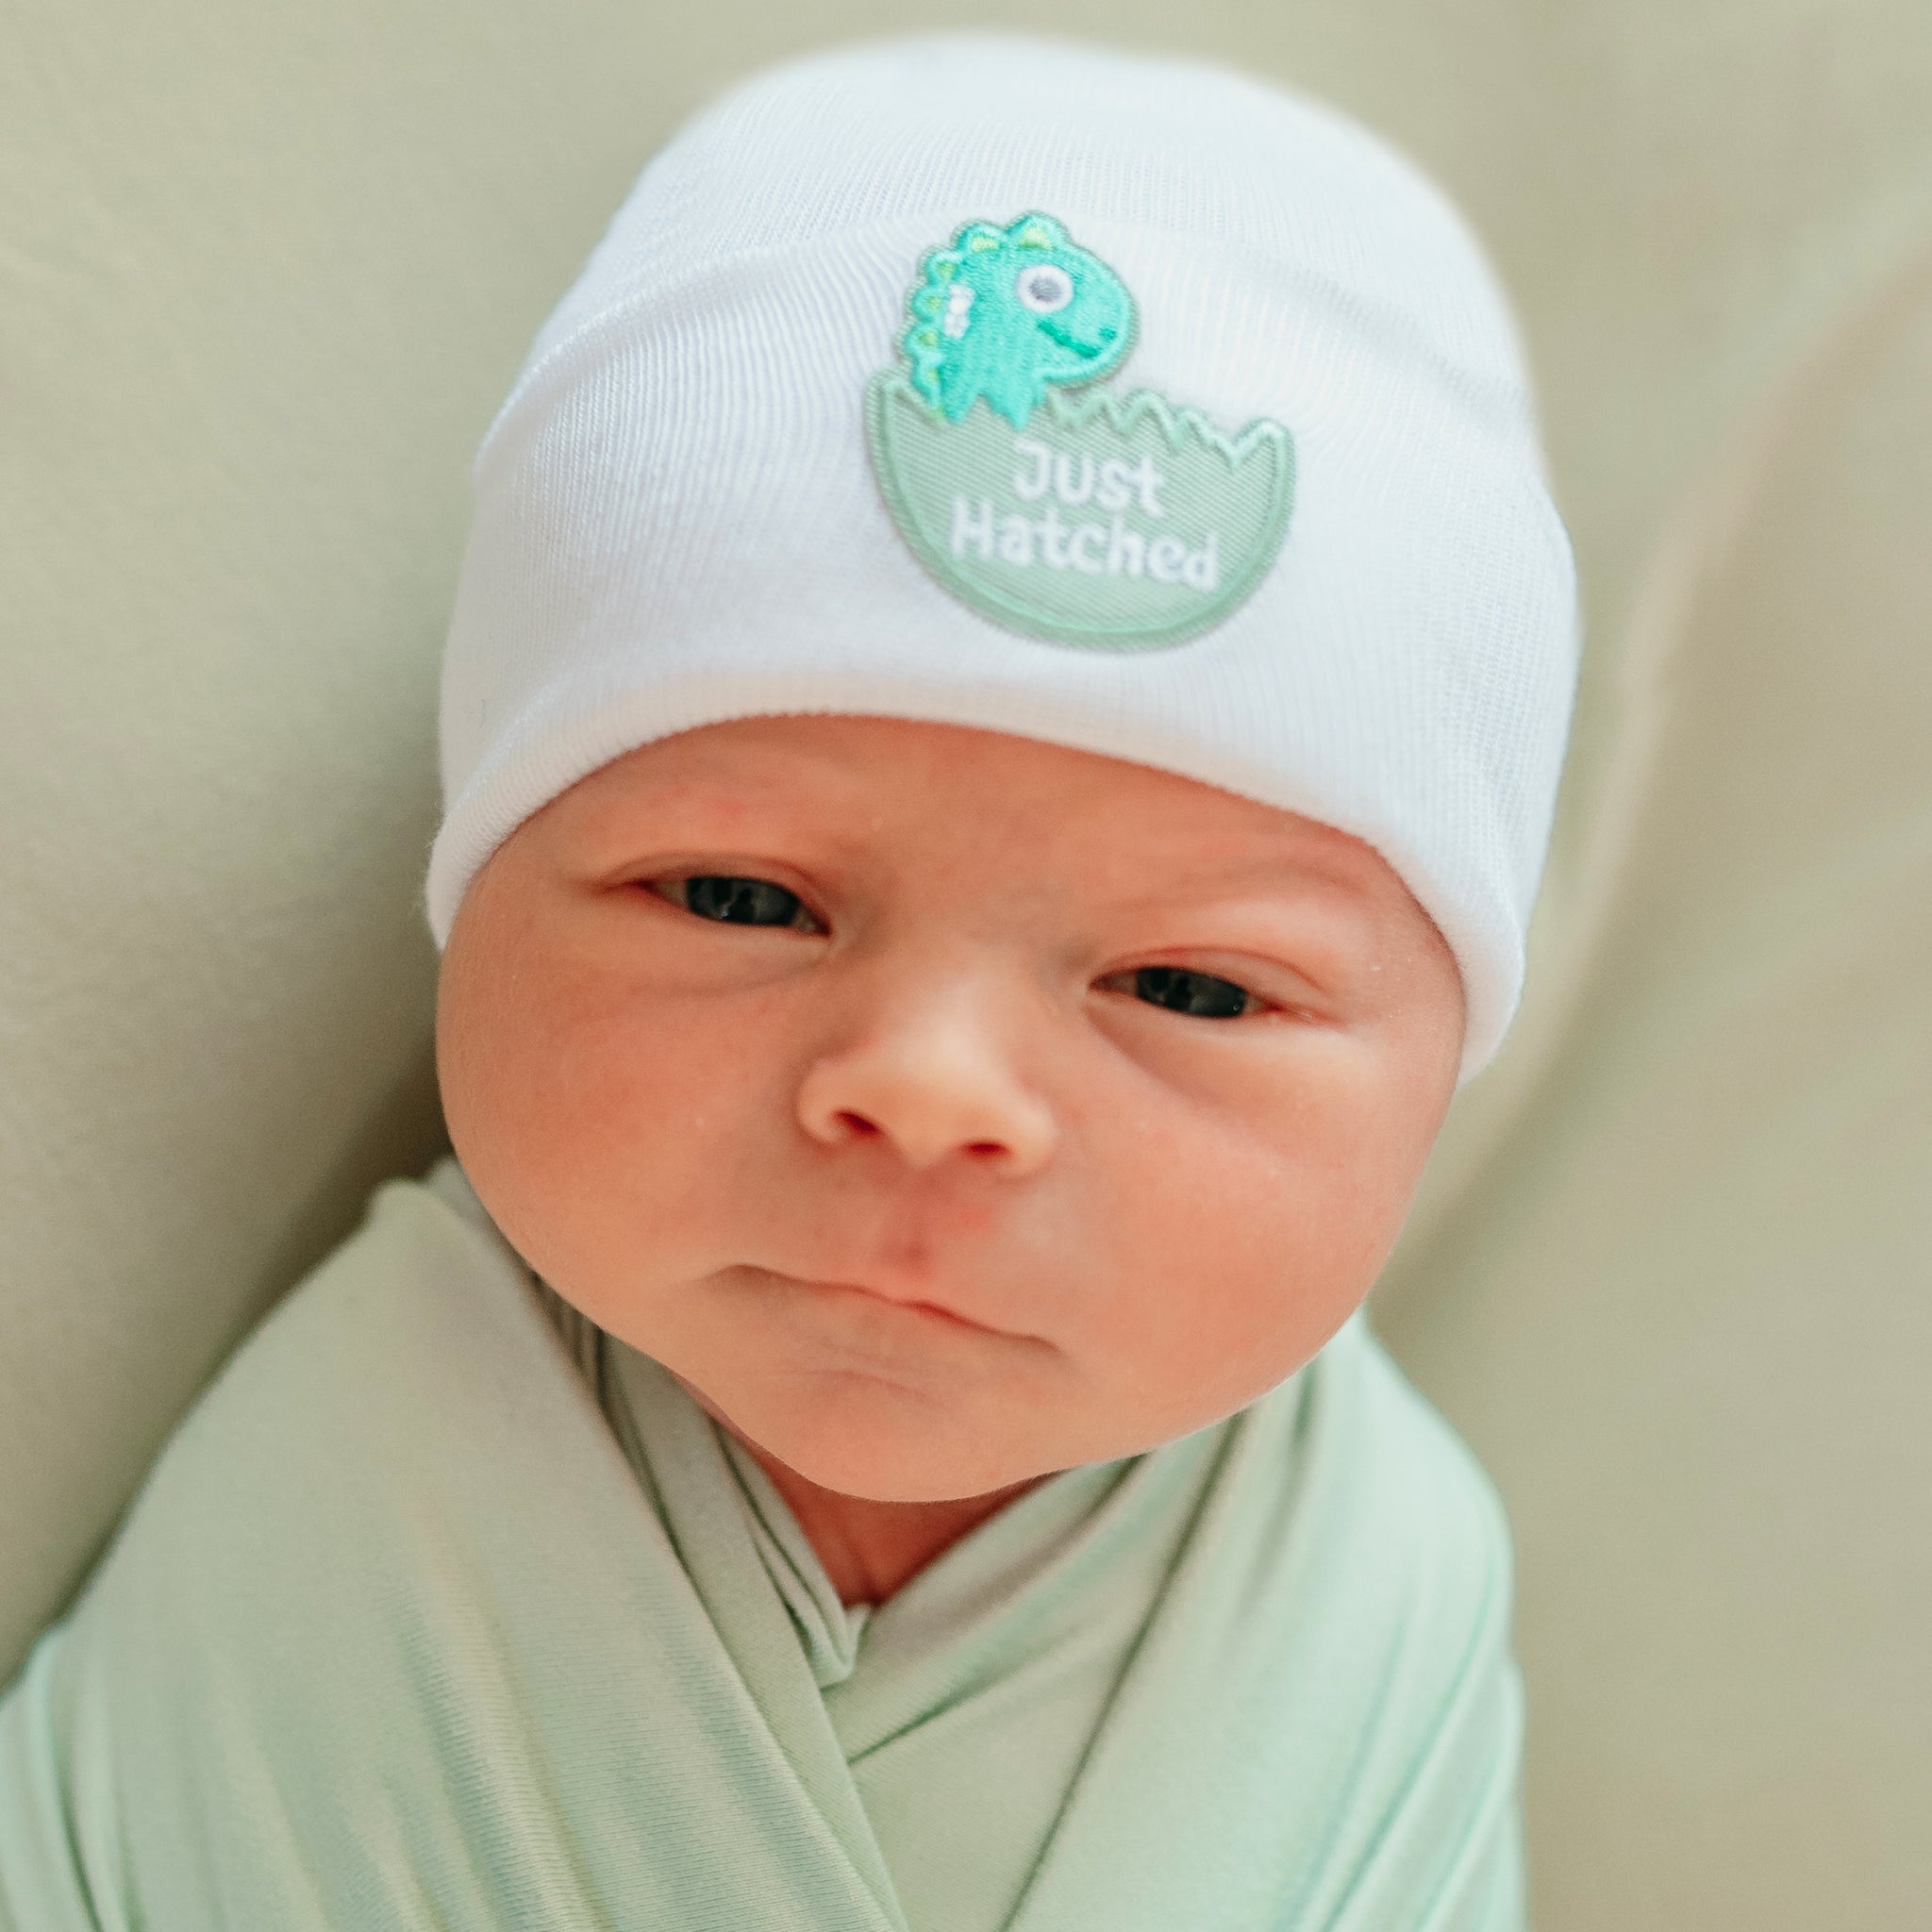 ilybean JUST HATCHED White Newborn Hospital Hat